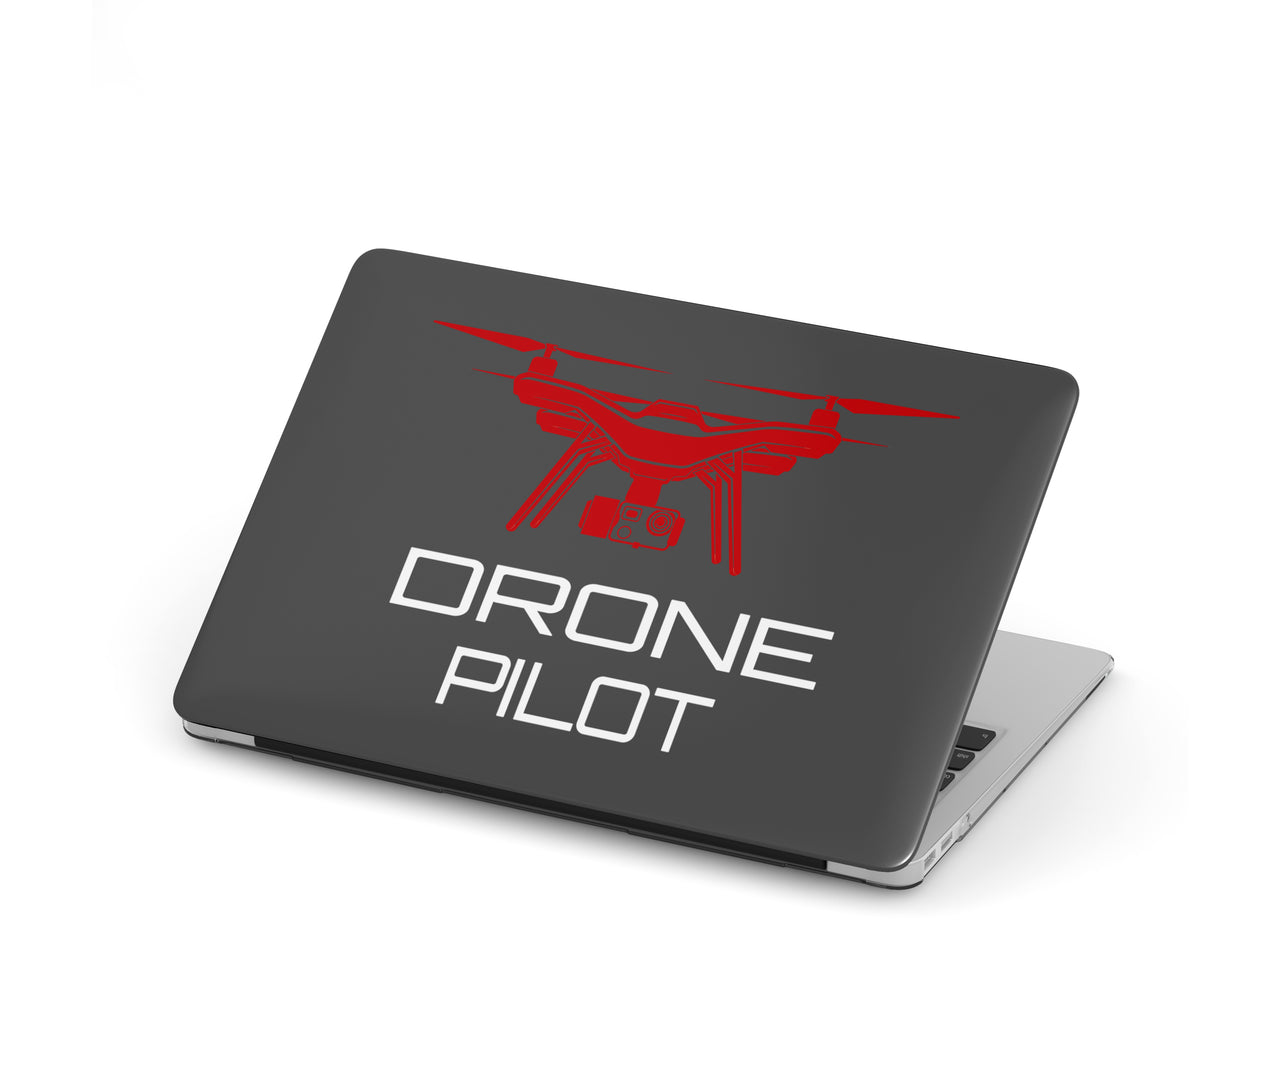 Drone Pilot Designed Macbook Cases